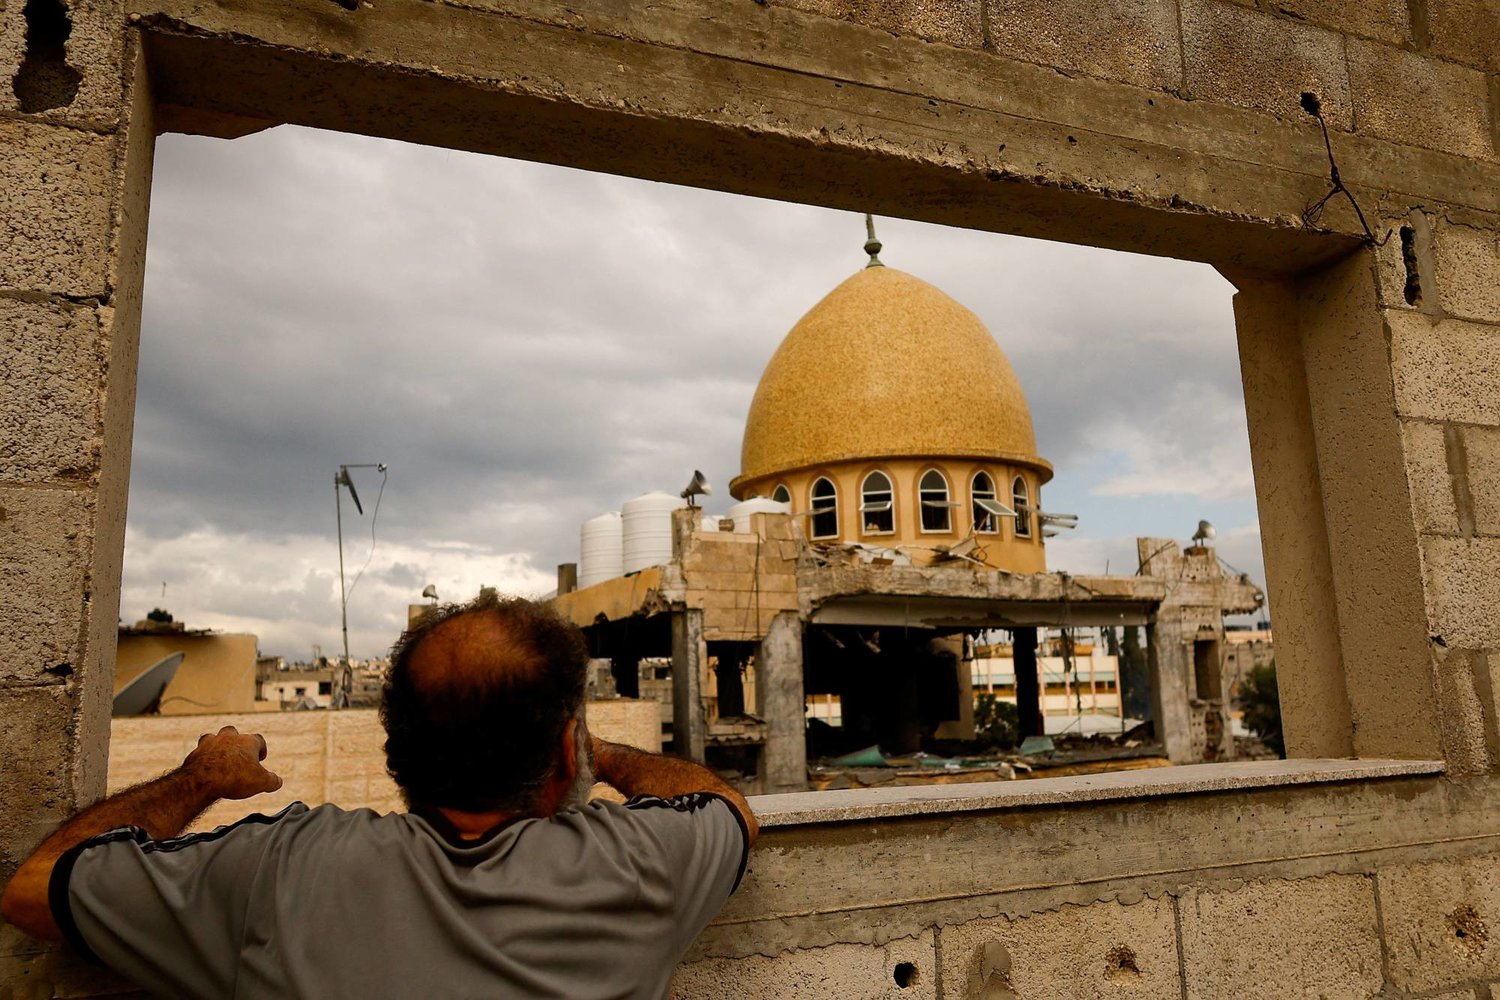 غزّة: الدولة لإدارة الشأن العامّ وليس لتطبيق الدين!